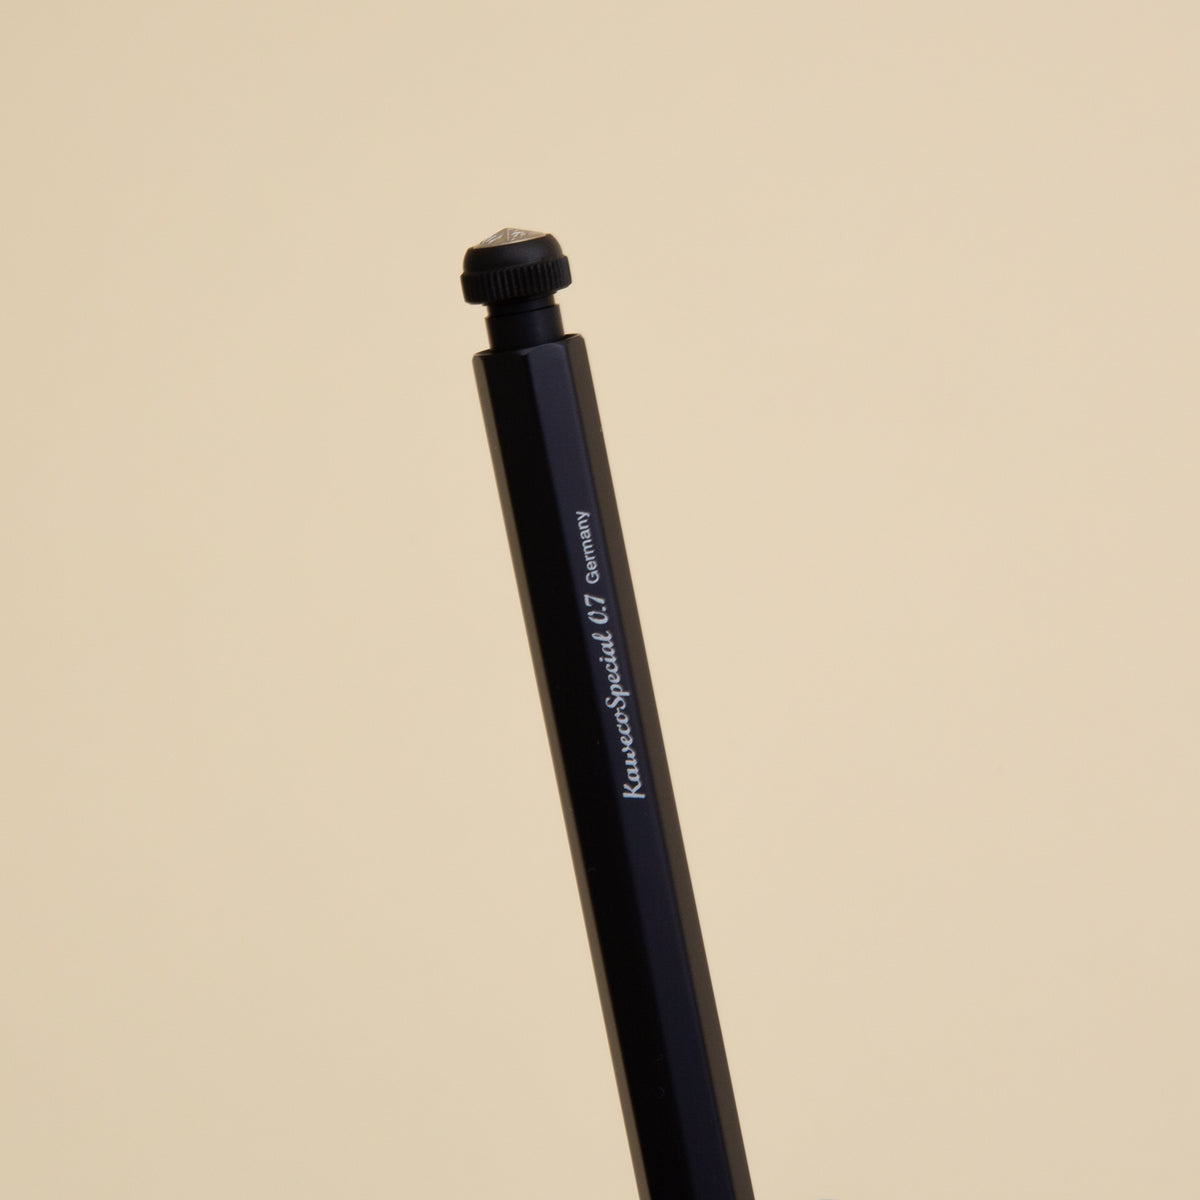 Kaweco Special Ballpoint Pen - Mini